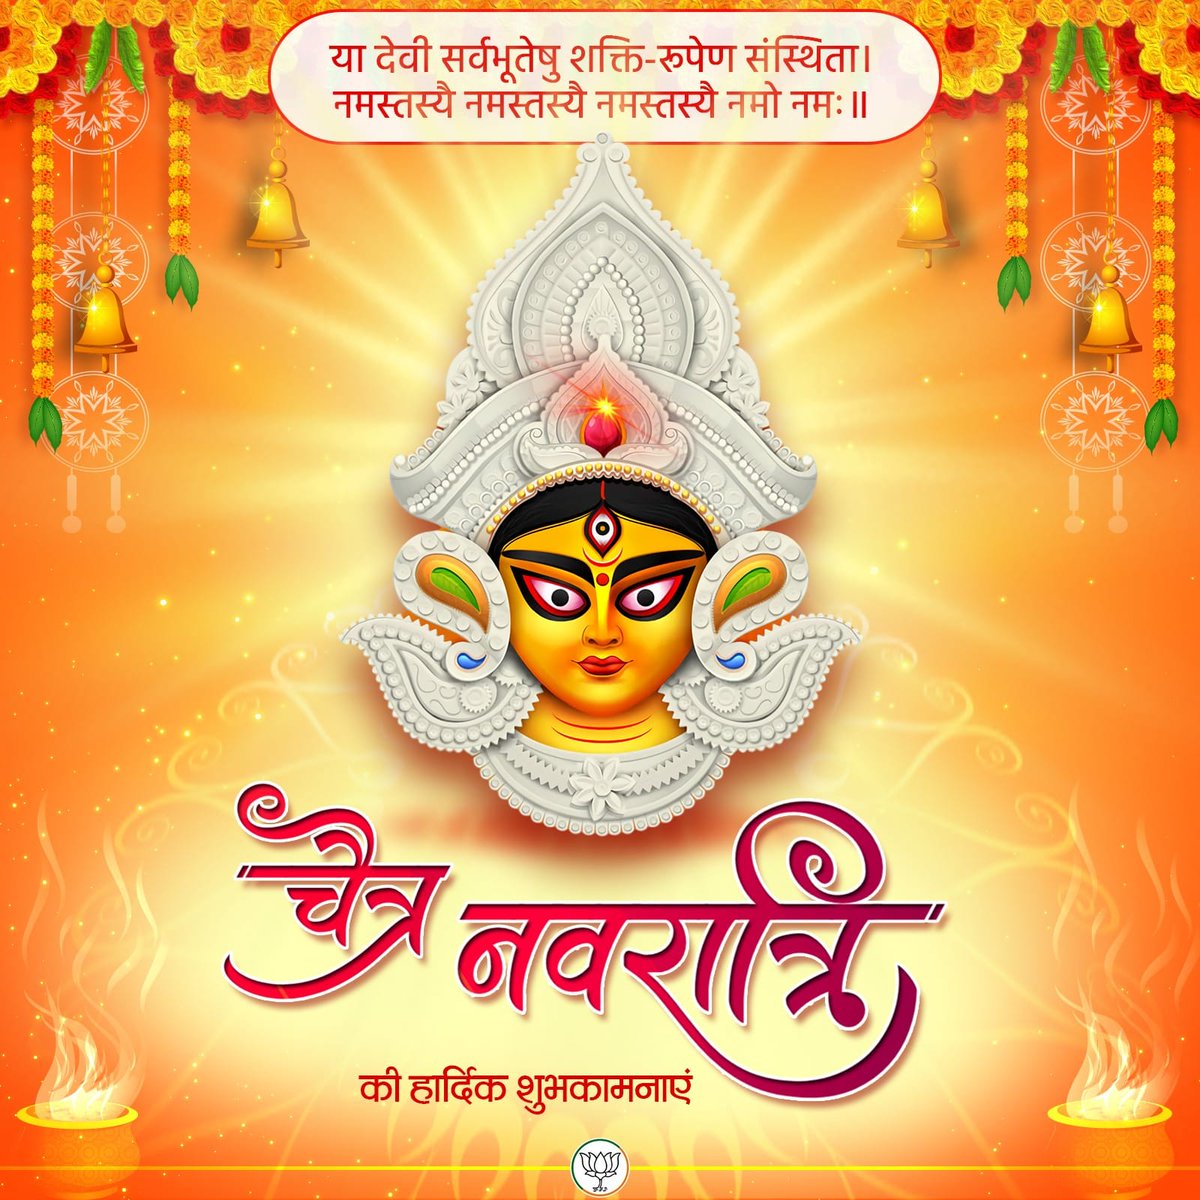 आप सभी को चैत्र नवरात्रि एवं हिन्दू नव वर्ष की हार्दिक शुभकामनाएं 🚩🙏 #HinduNewYear #ChaitraNavratri2024